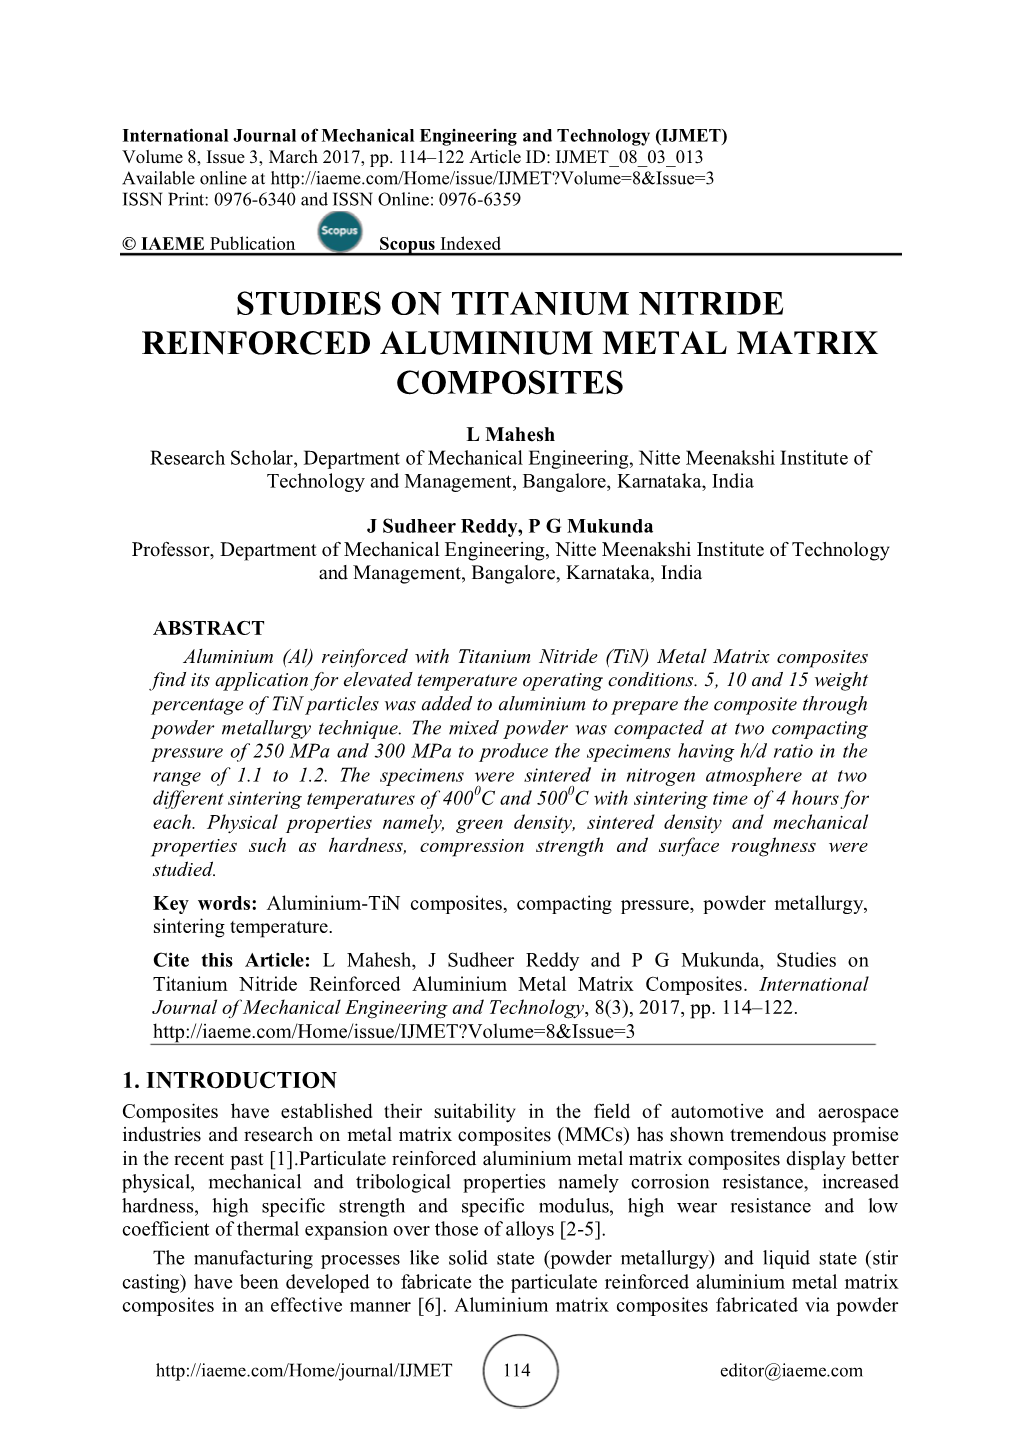 Studies on Titanium Nitride Reinforced Aluminium Metal Matrix Composites